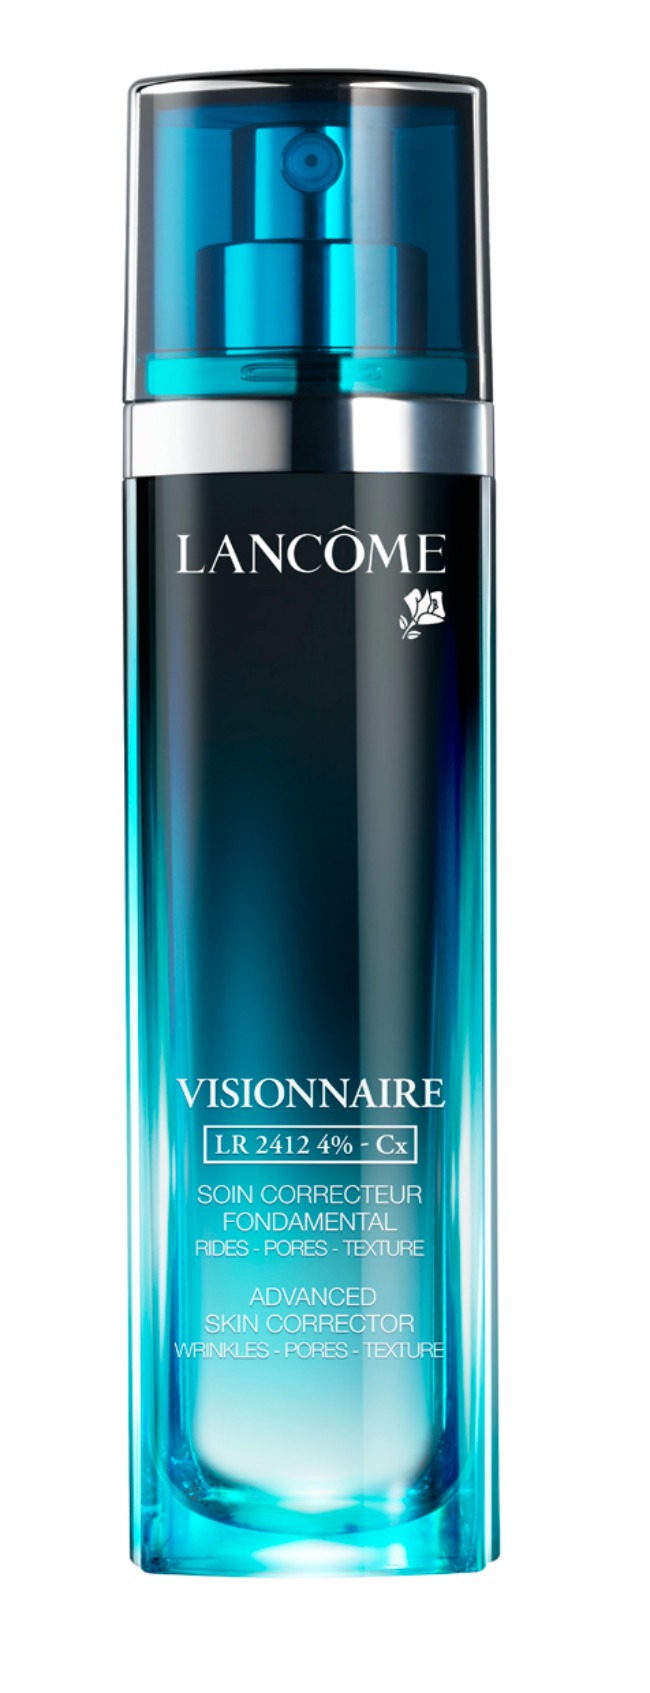 lancôme visionnaire advanced skin corrector 1 Lancôme: Visionnaire Advanced Skin Corrector